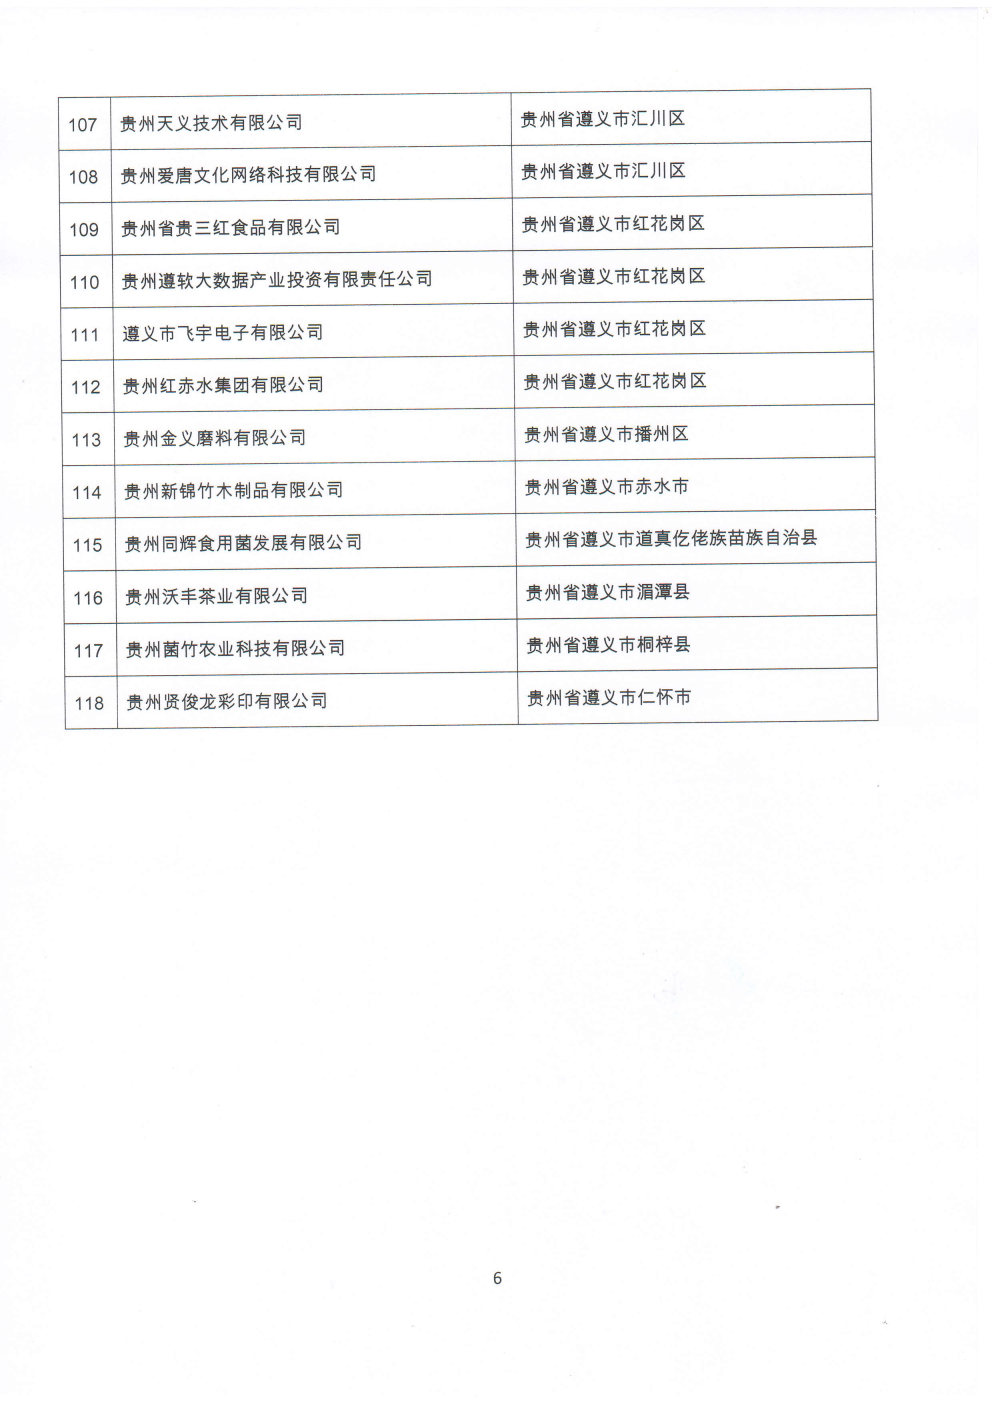 附件：贵州省2020年第三批拟入库科技型中小企业名单_Page6_Image1.jpg